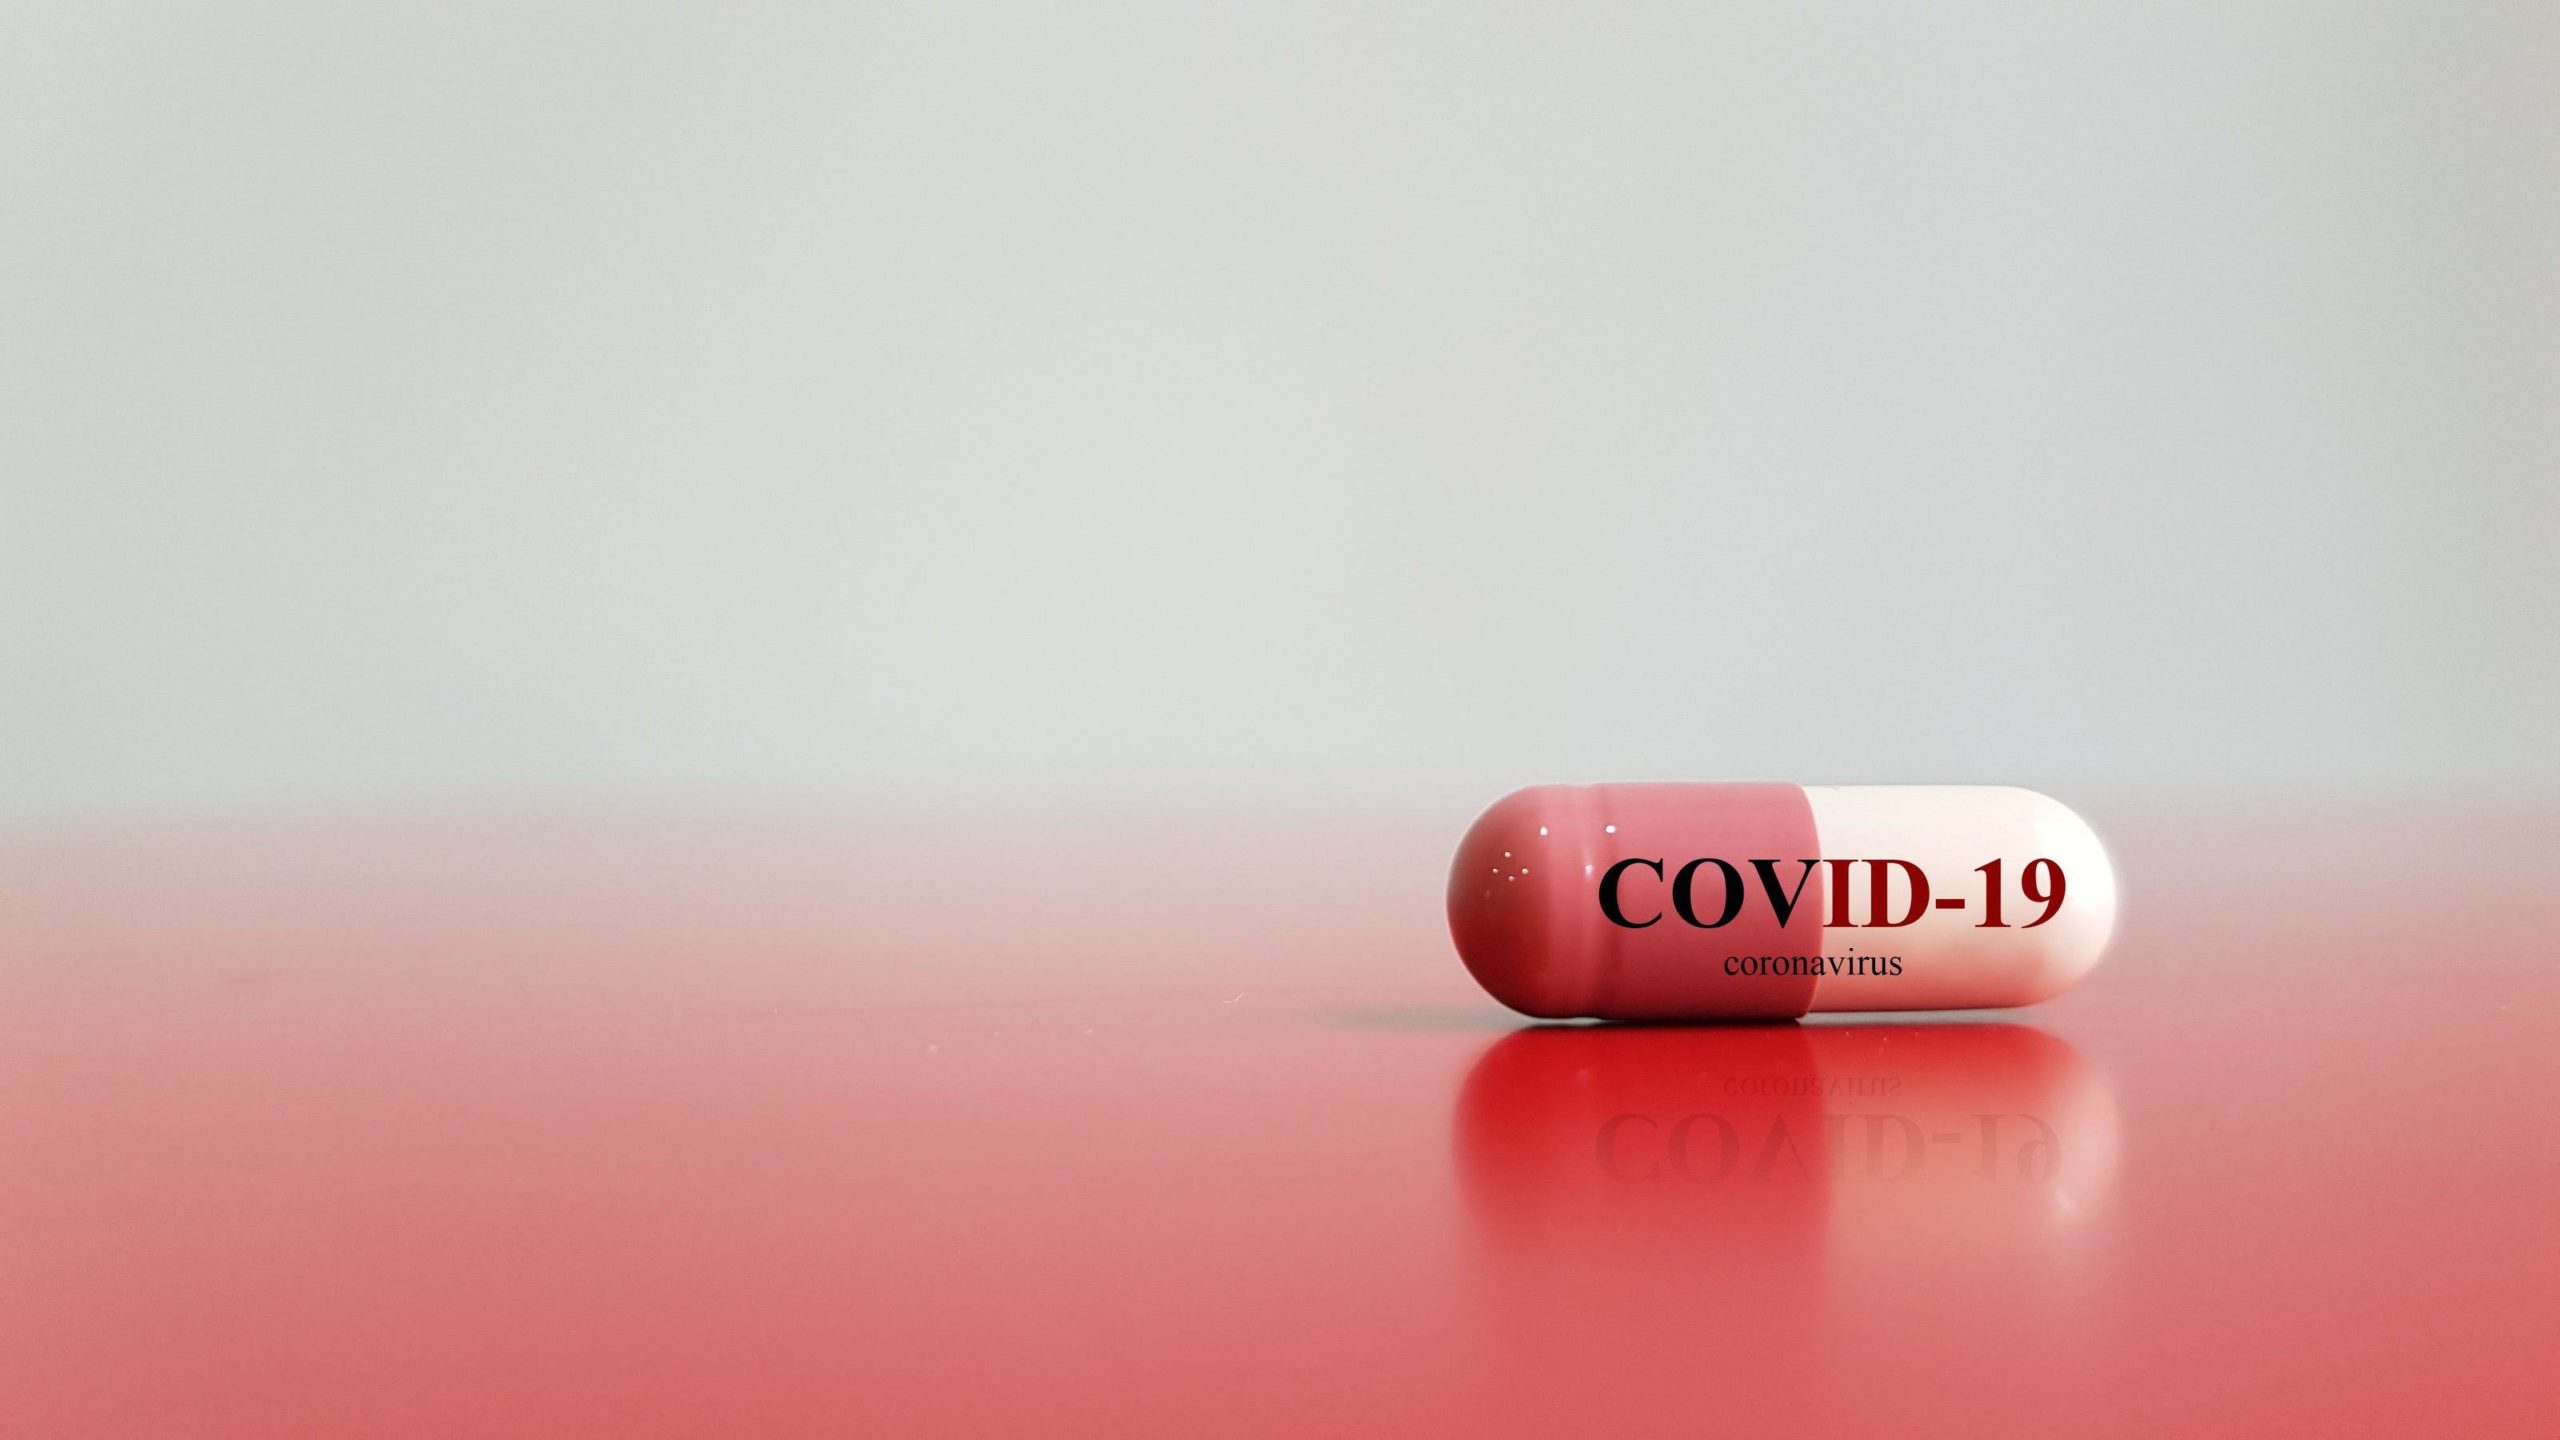 Coronavirus drug